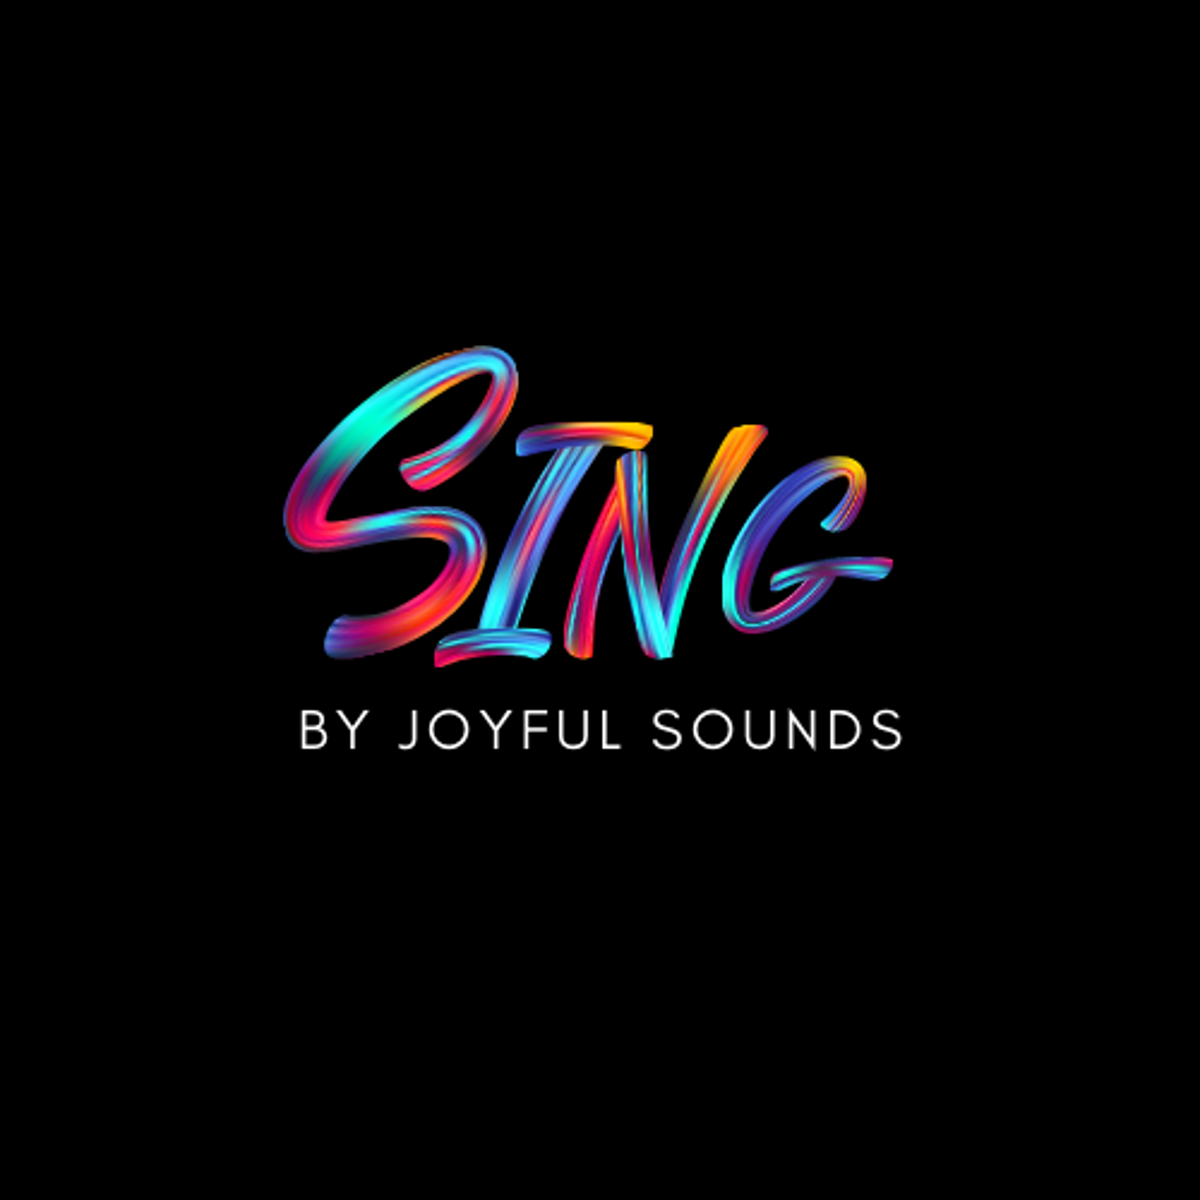 SING